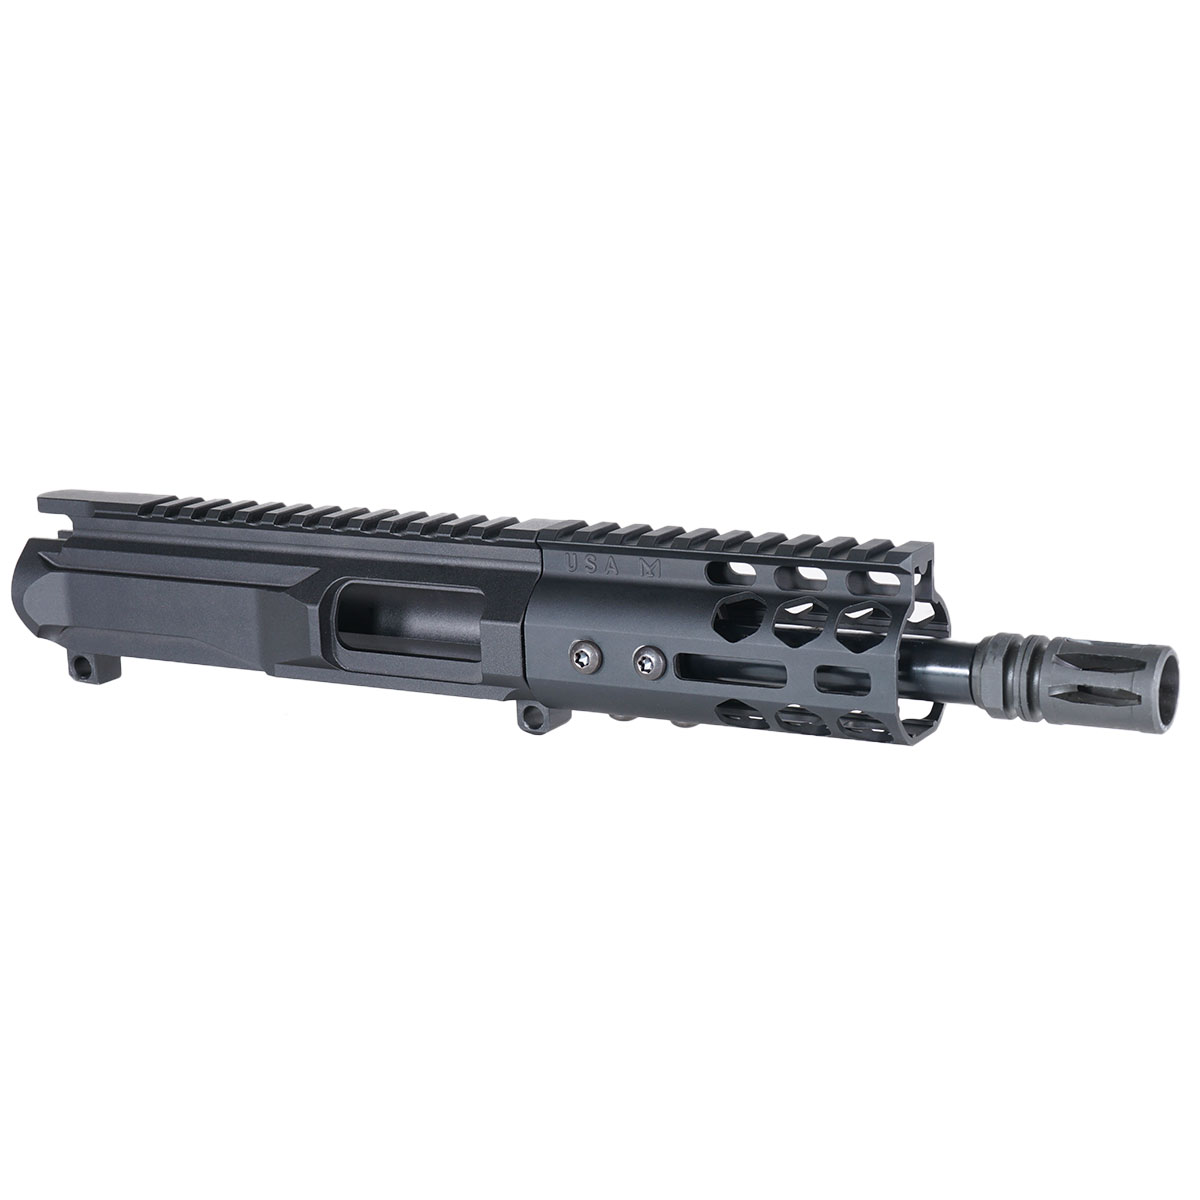 DTT 'H.V.T Gen 2' 6-inch AR-15 9mm Nitride Pistol Upper Build Kit